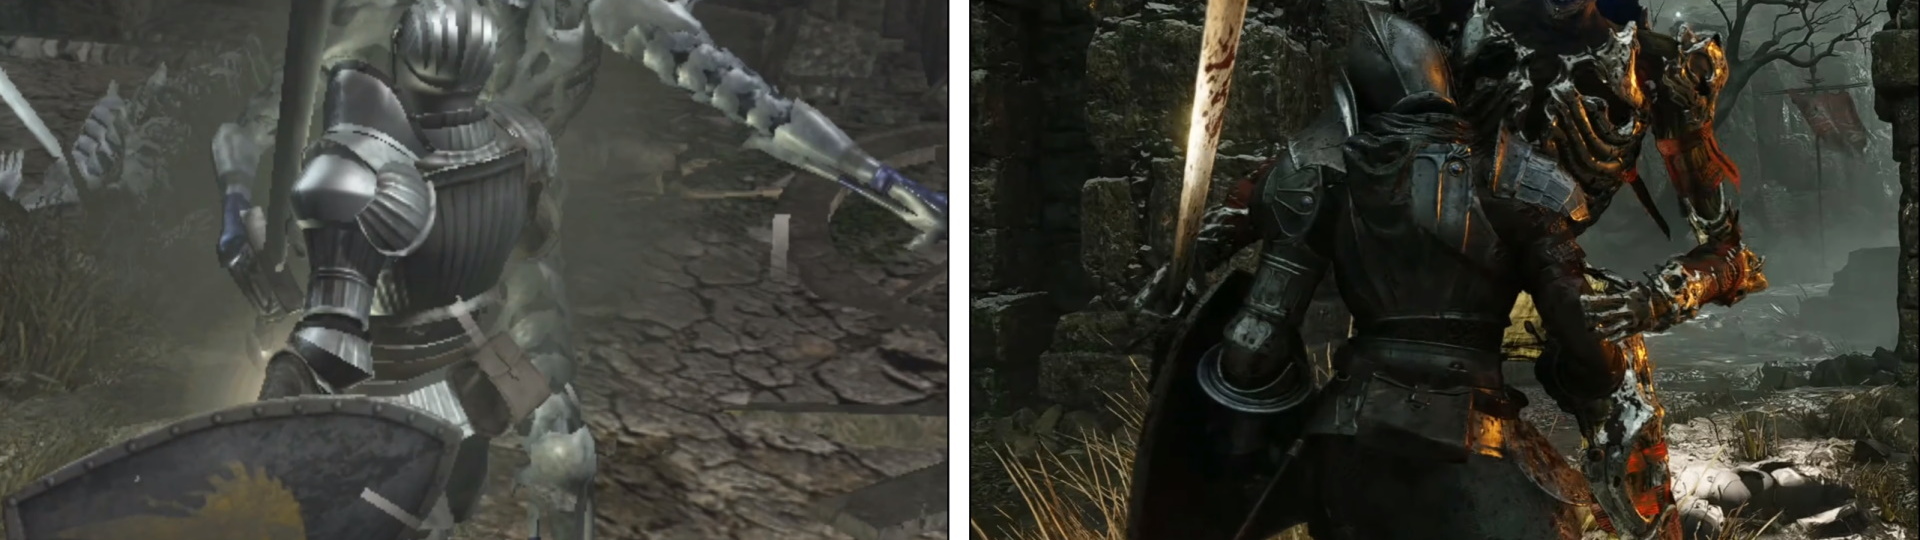 YouTuber nádherně porovnal PS3 a PS5 gameplay z Demon's Souls | Novinky